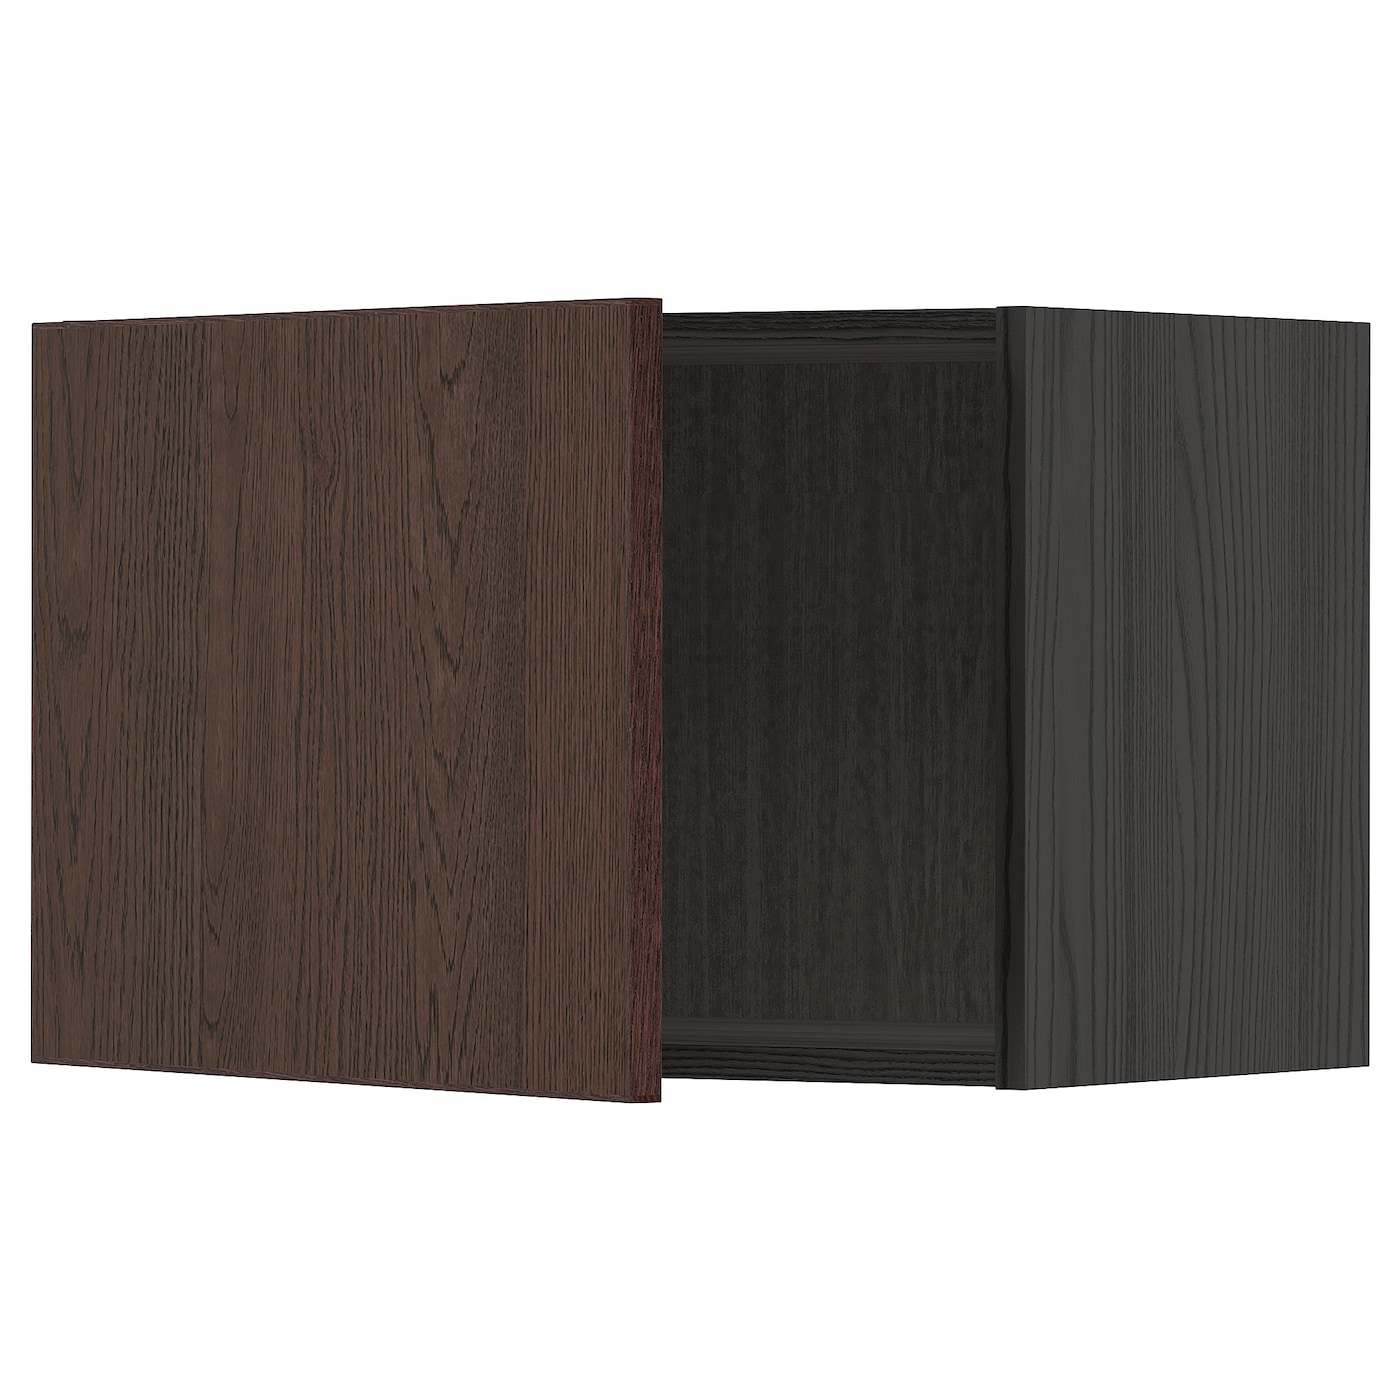 Навесной шкаф - METOD IKEA/ МЕТОД ИКЕА, 40х60 см, черный/коричневый